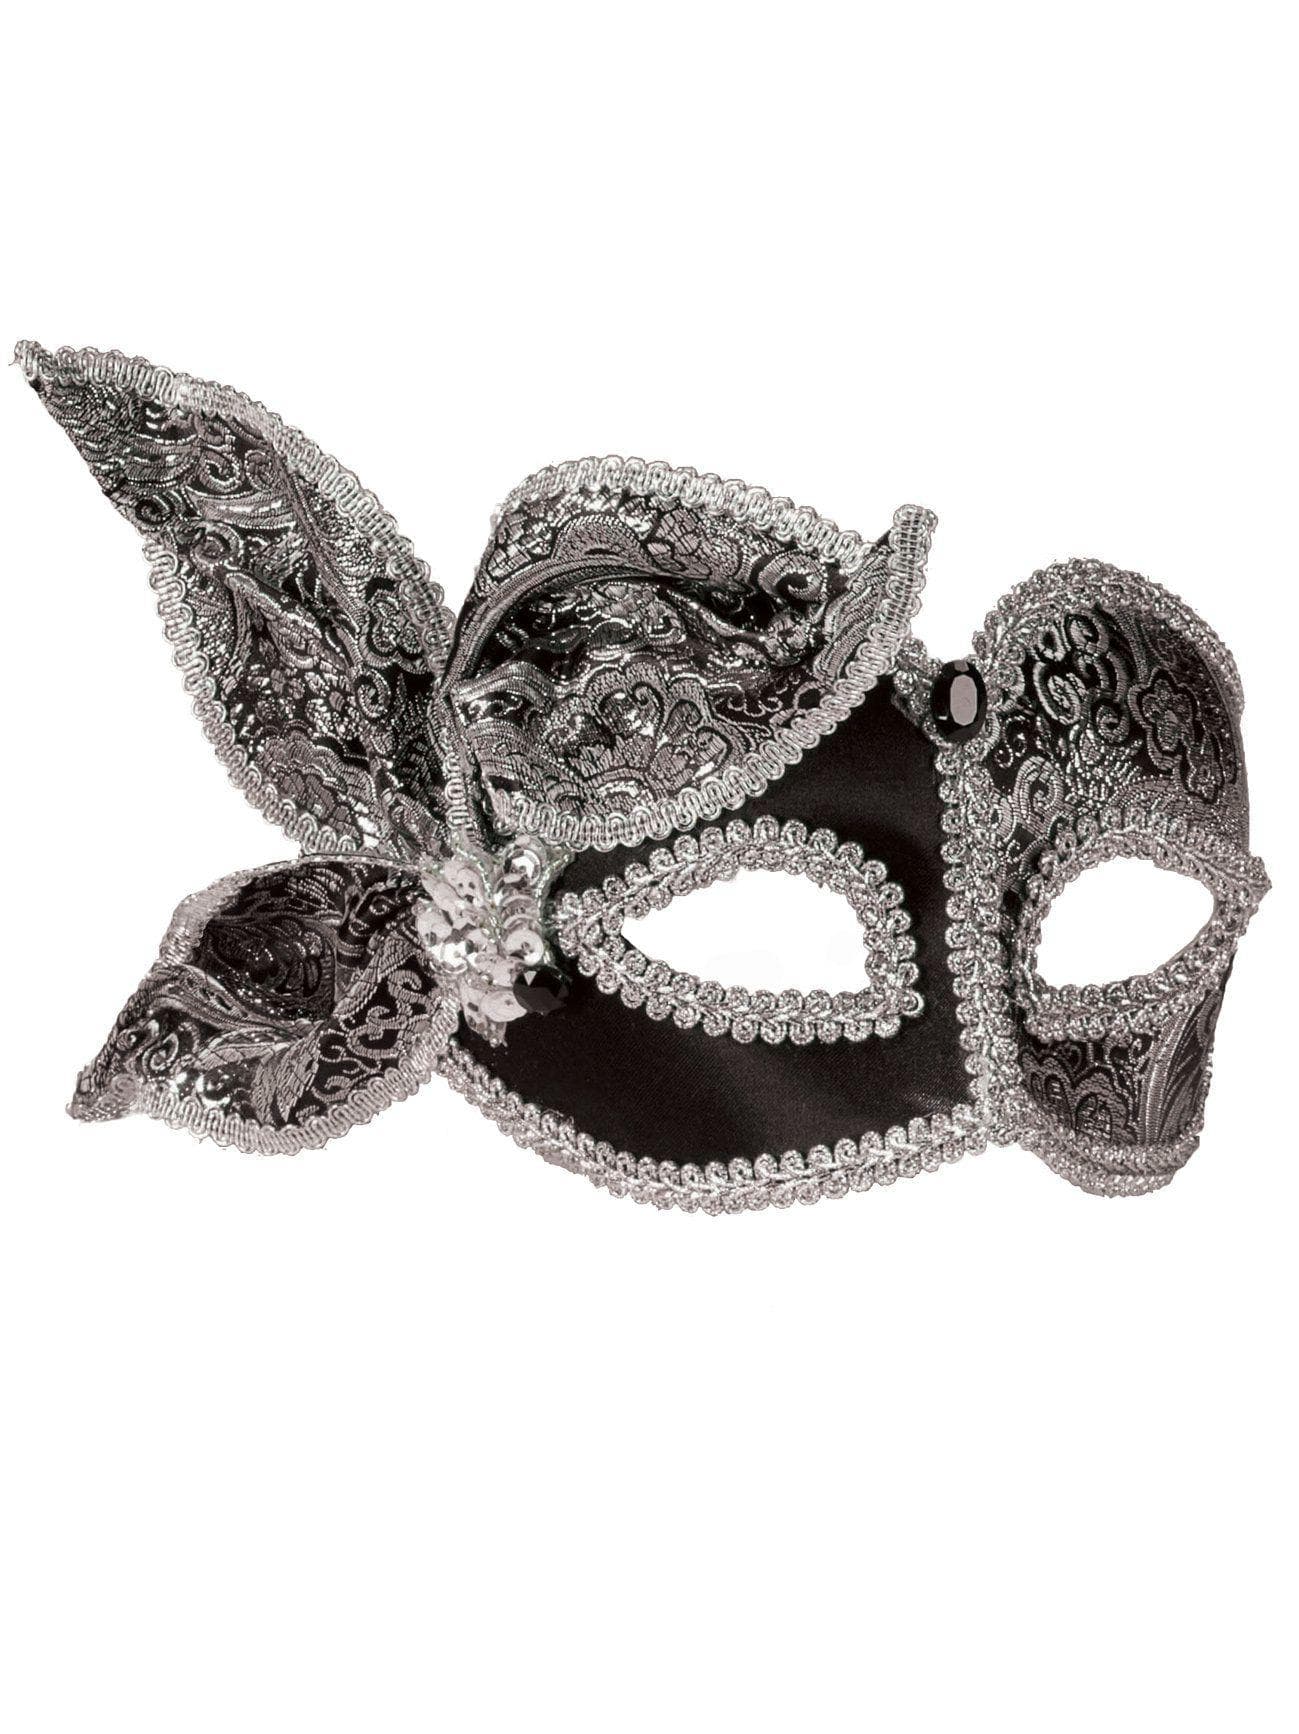 Masquerade Brocade Mask - costumes.com